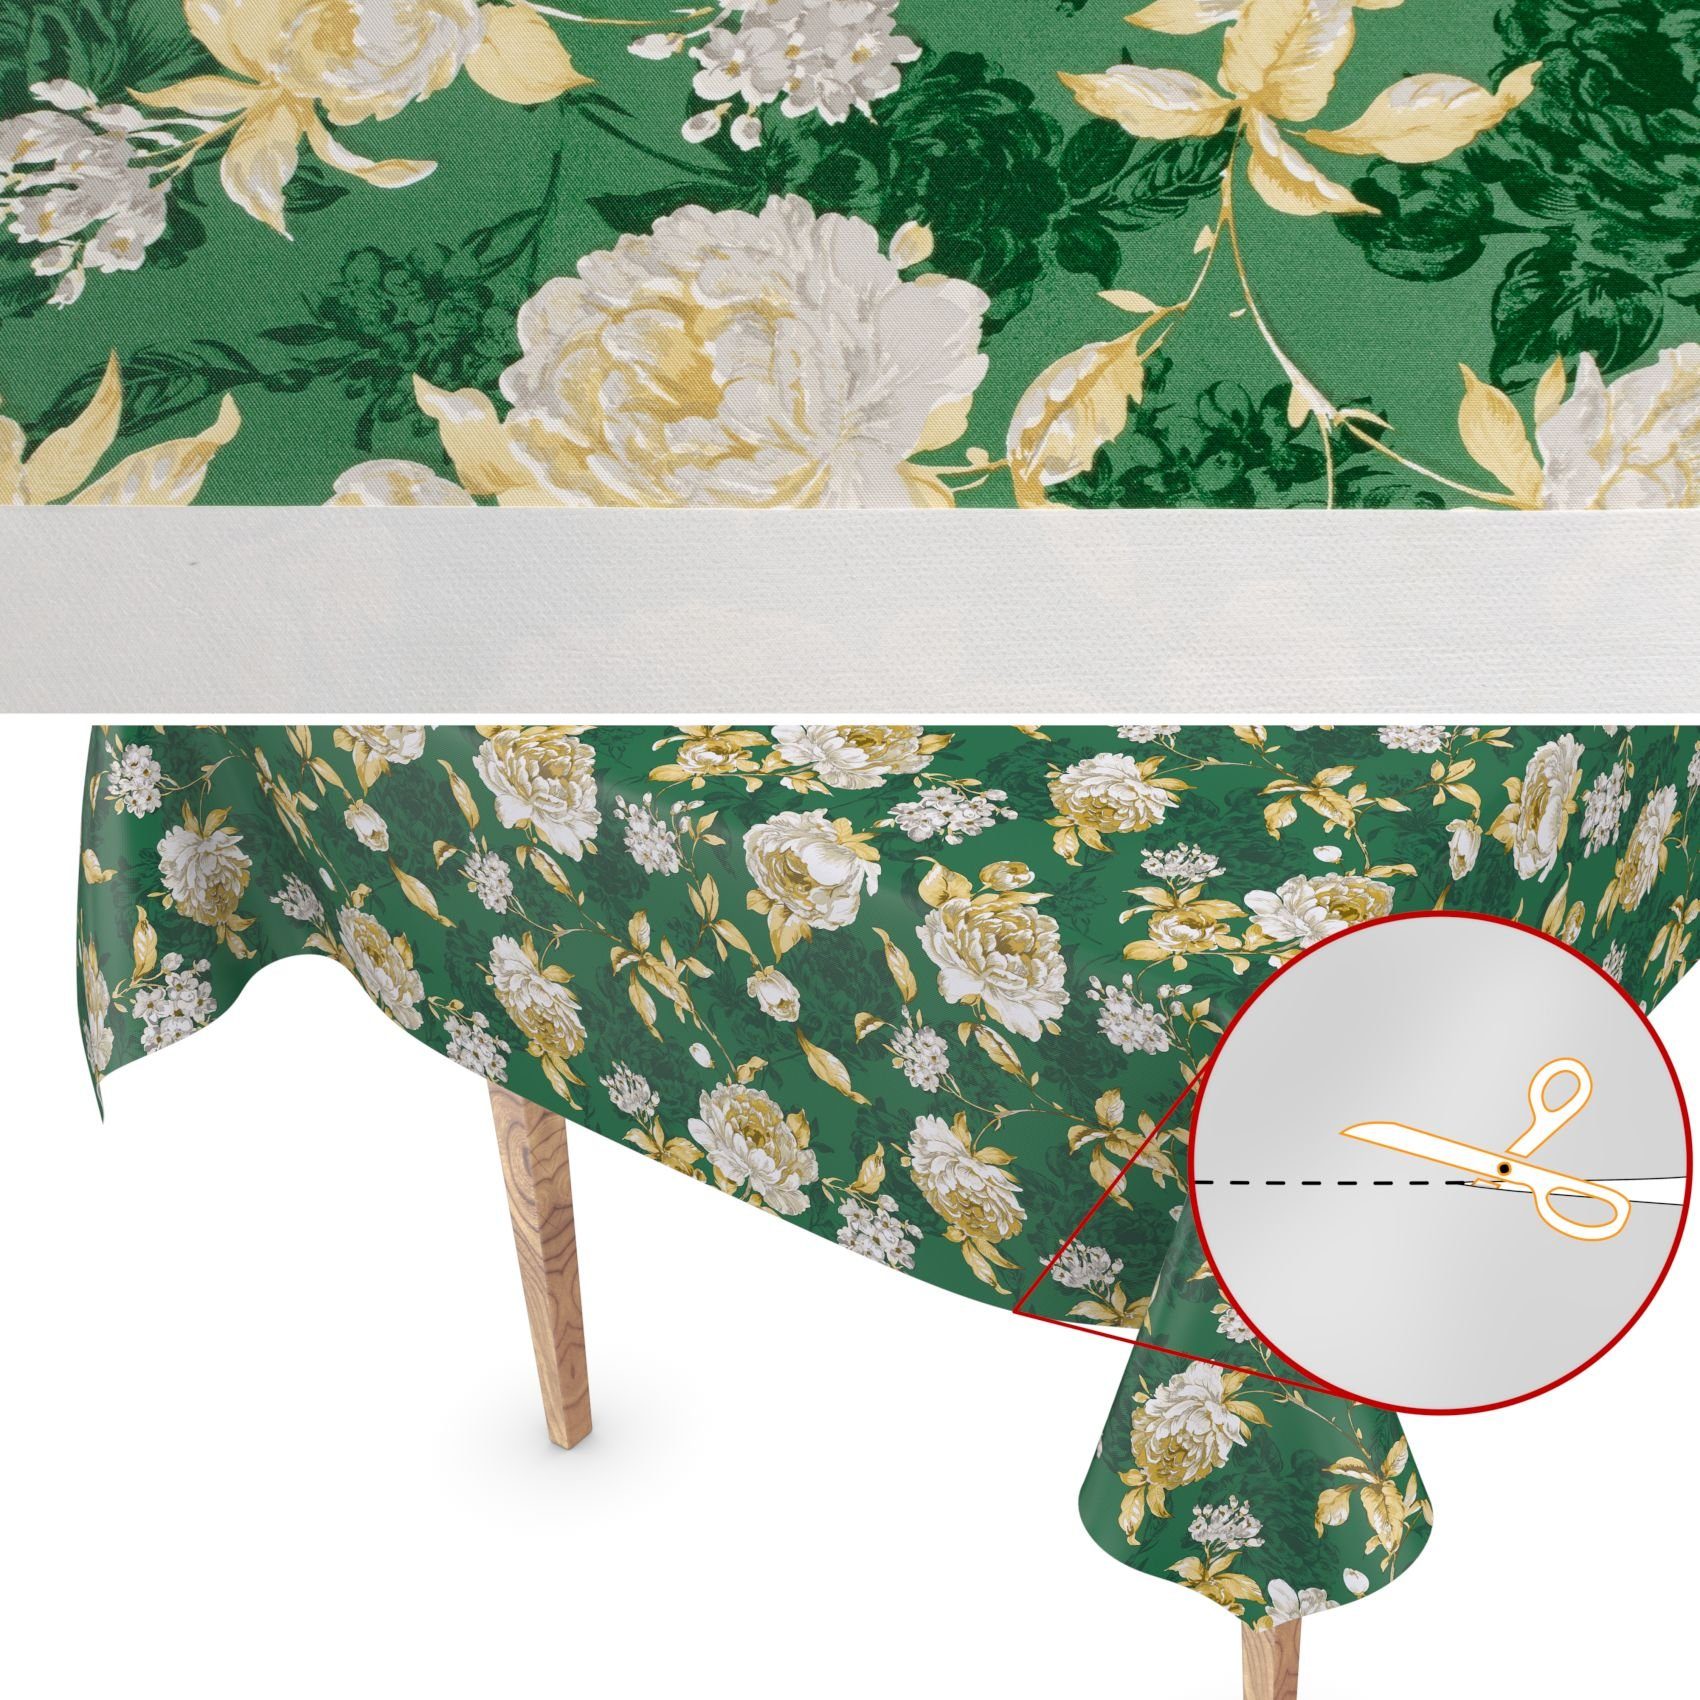 140 Breite ANRO Blumen Geprägt Wachstuch Tischdecke Wasserabweisend Tischdecke Grün Robust cm,